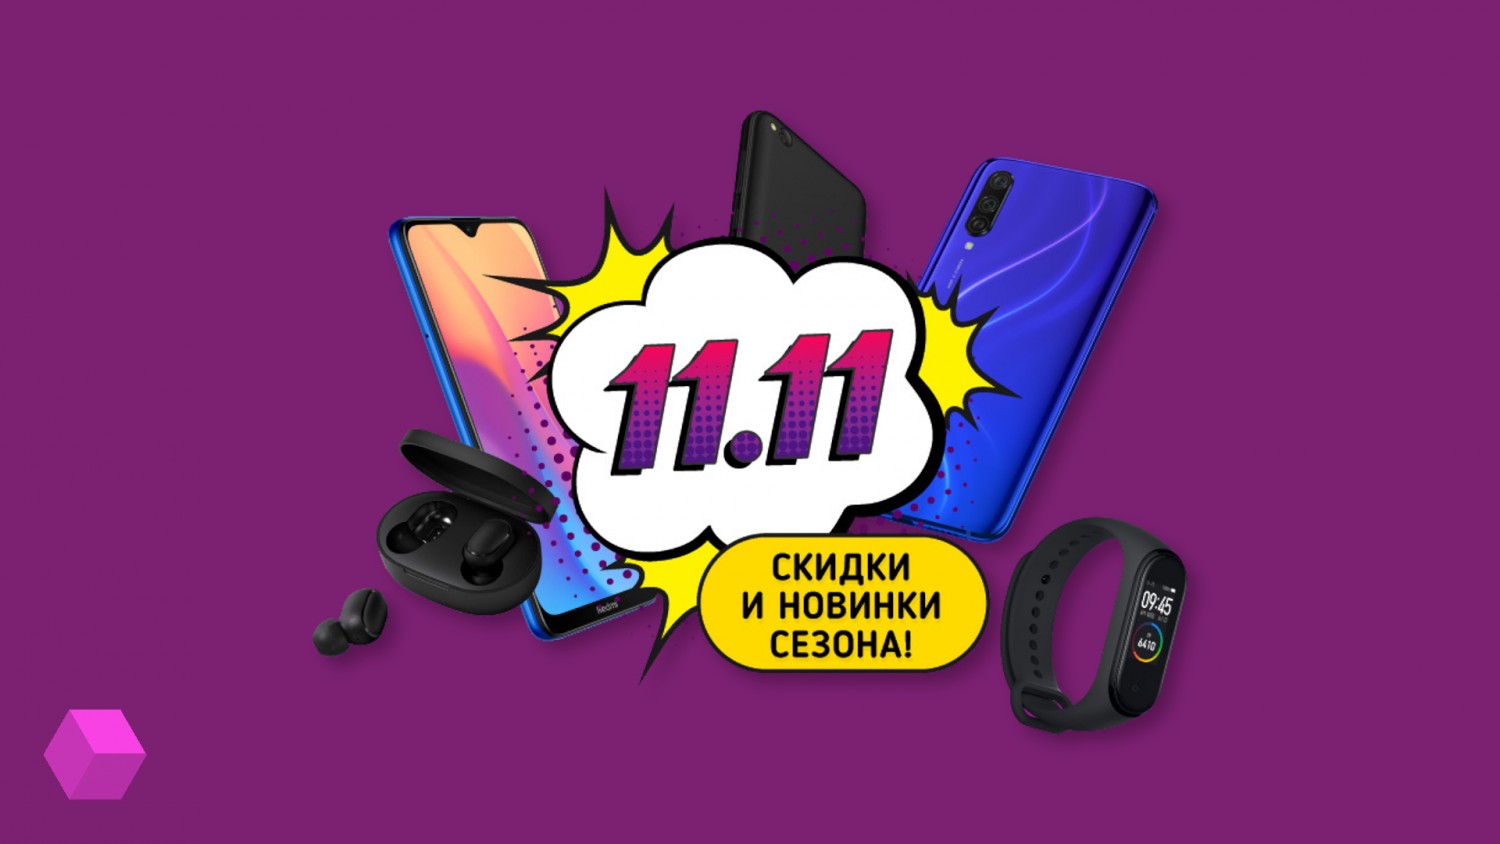 Распродажа Xiaomi в честь Дня холостяков: скидки до 3000 рублей